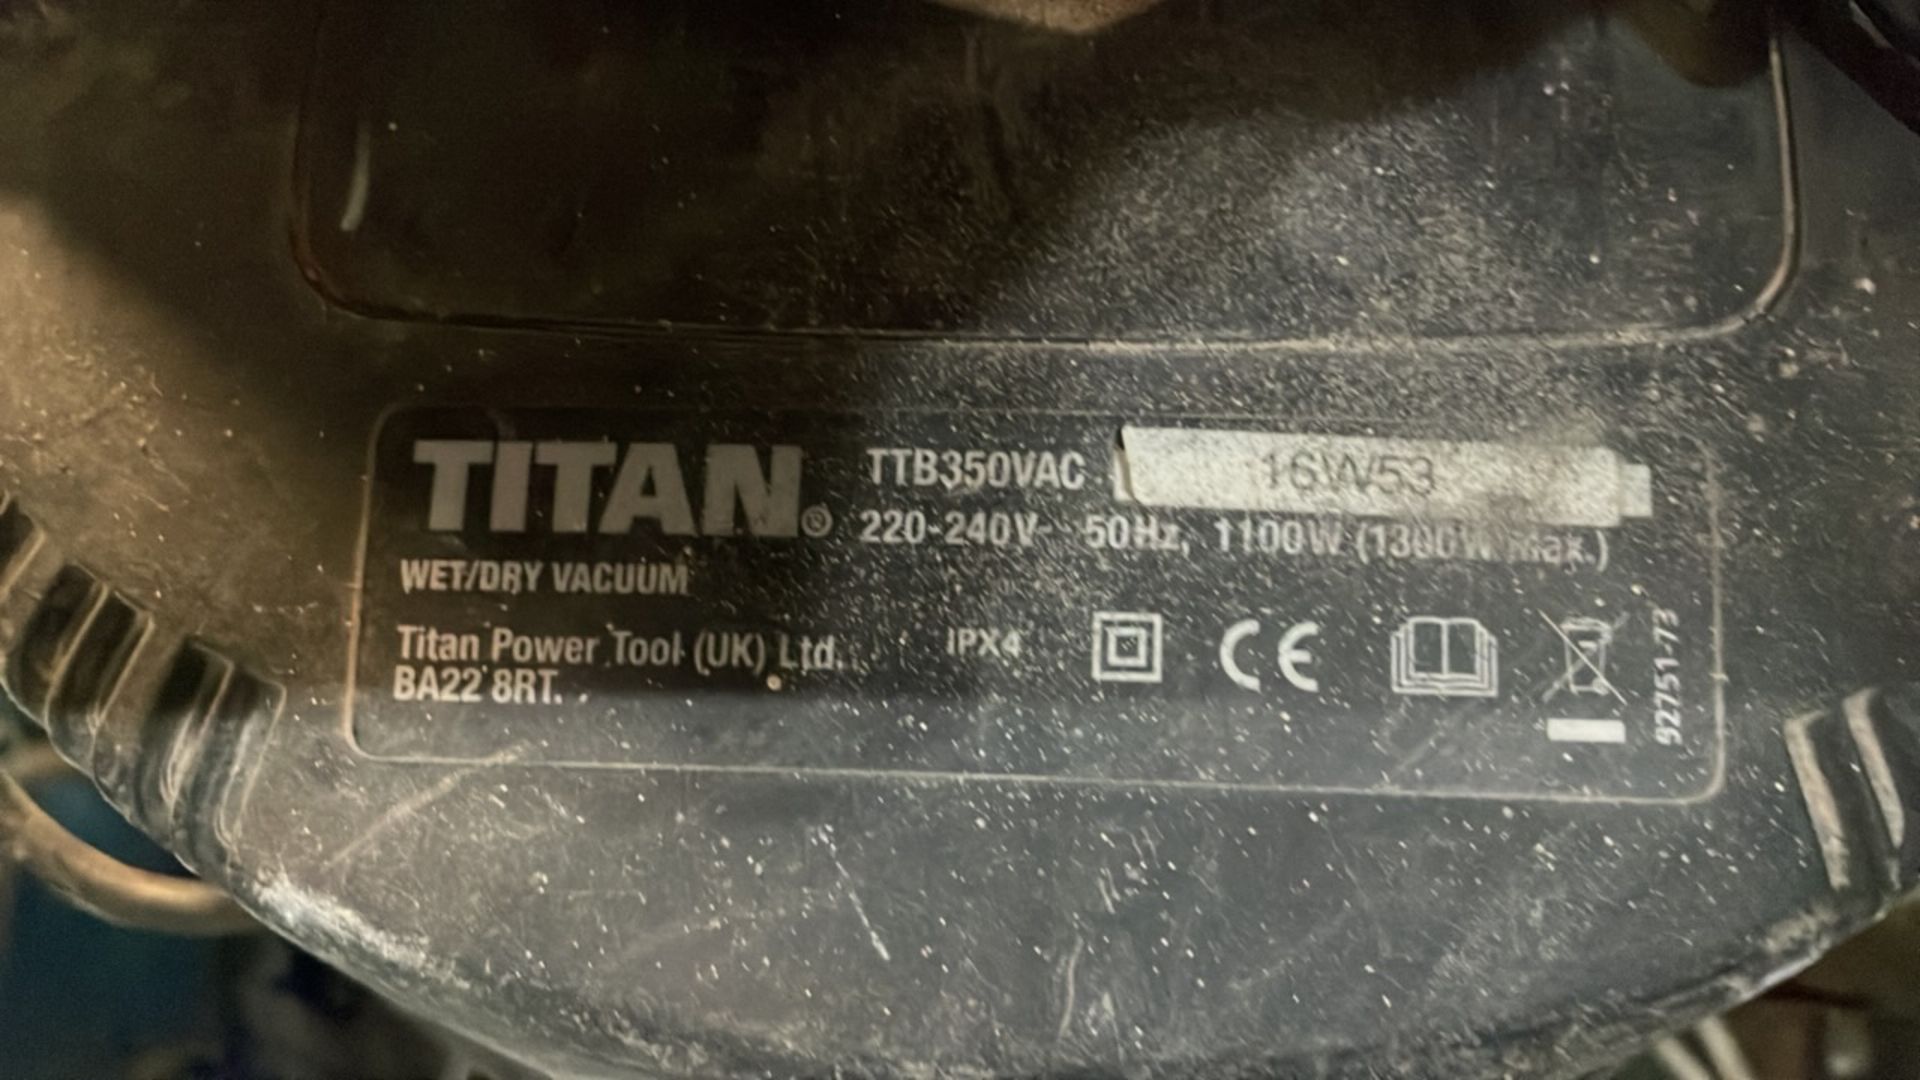 Titan TTB350VAC Wet & Dry Vacuum Cleaner - Image 2 of 2